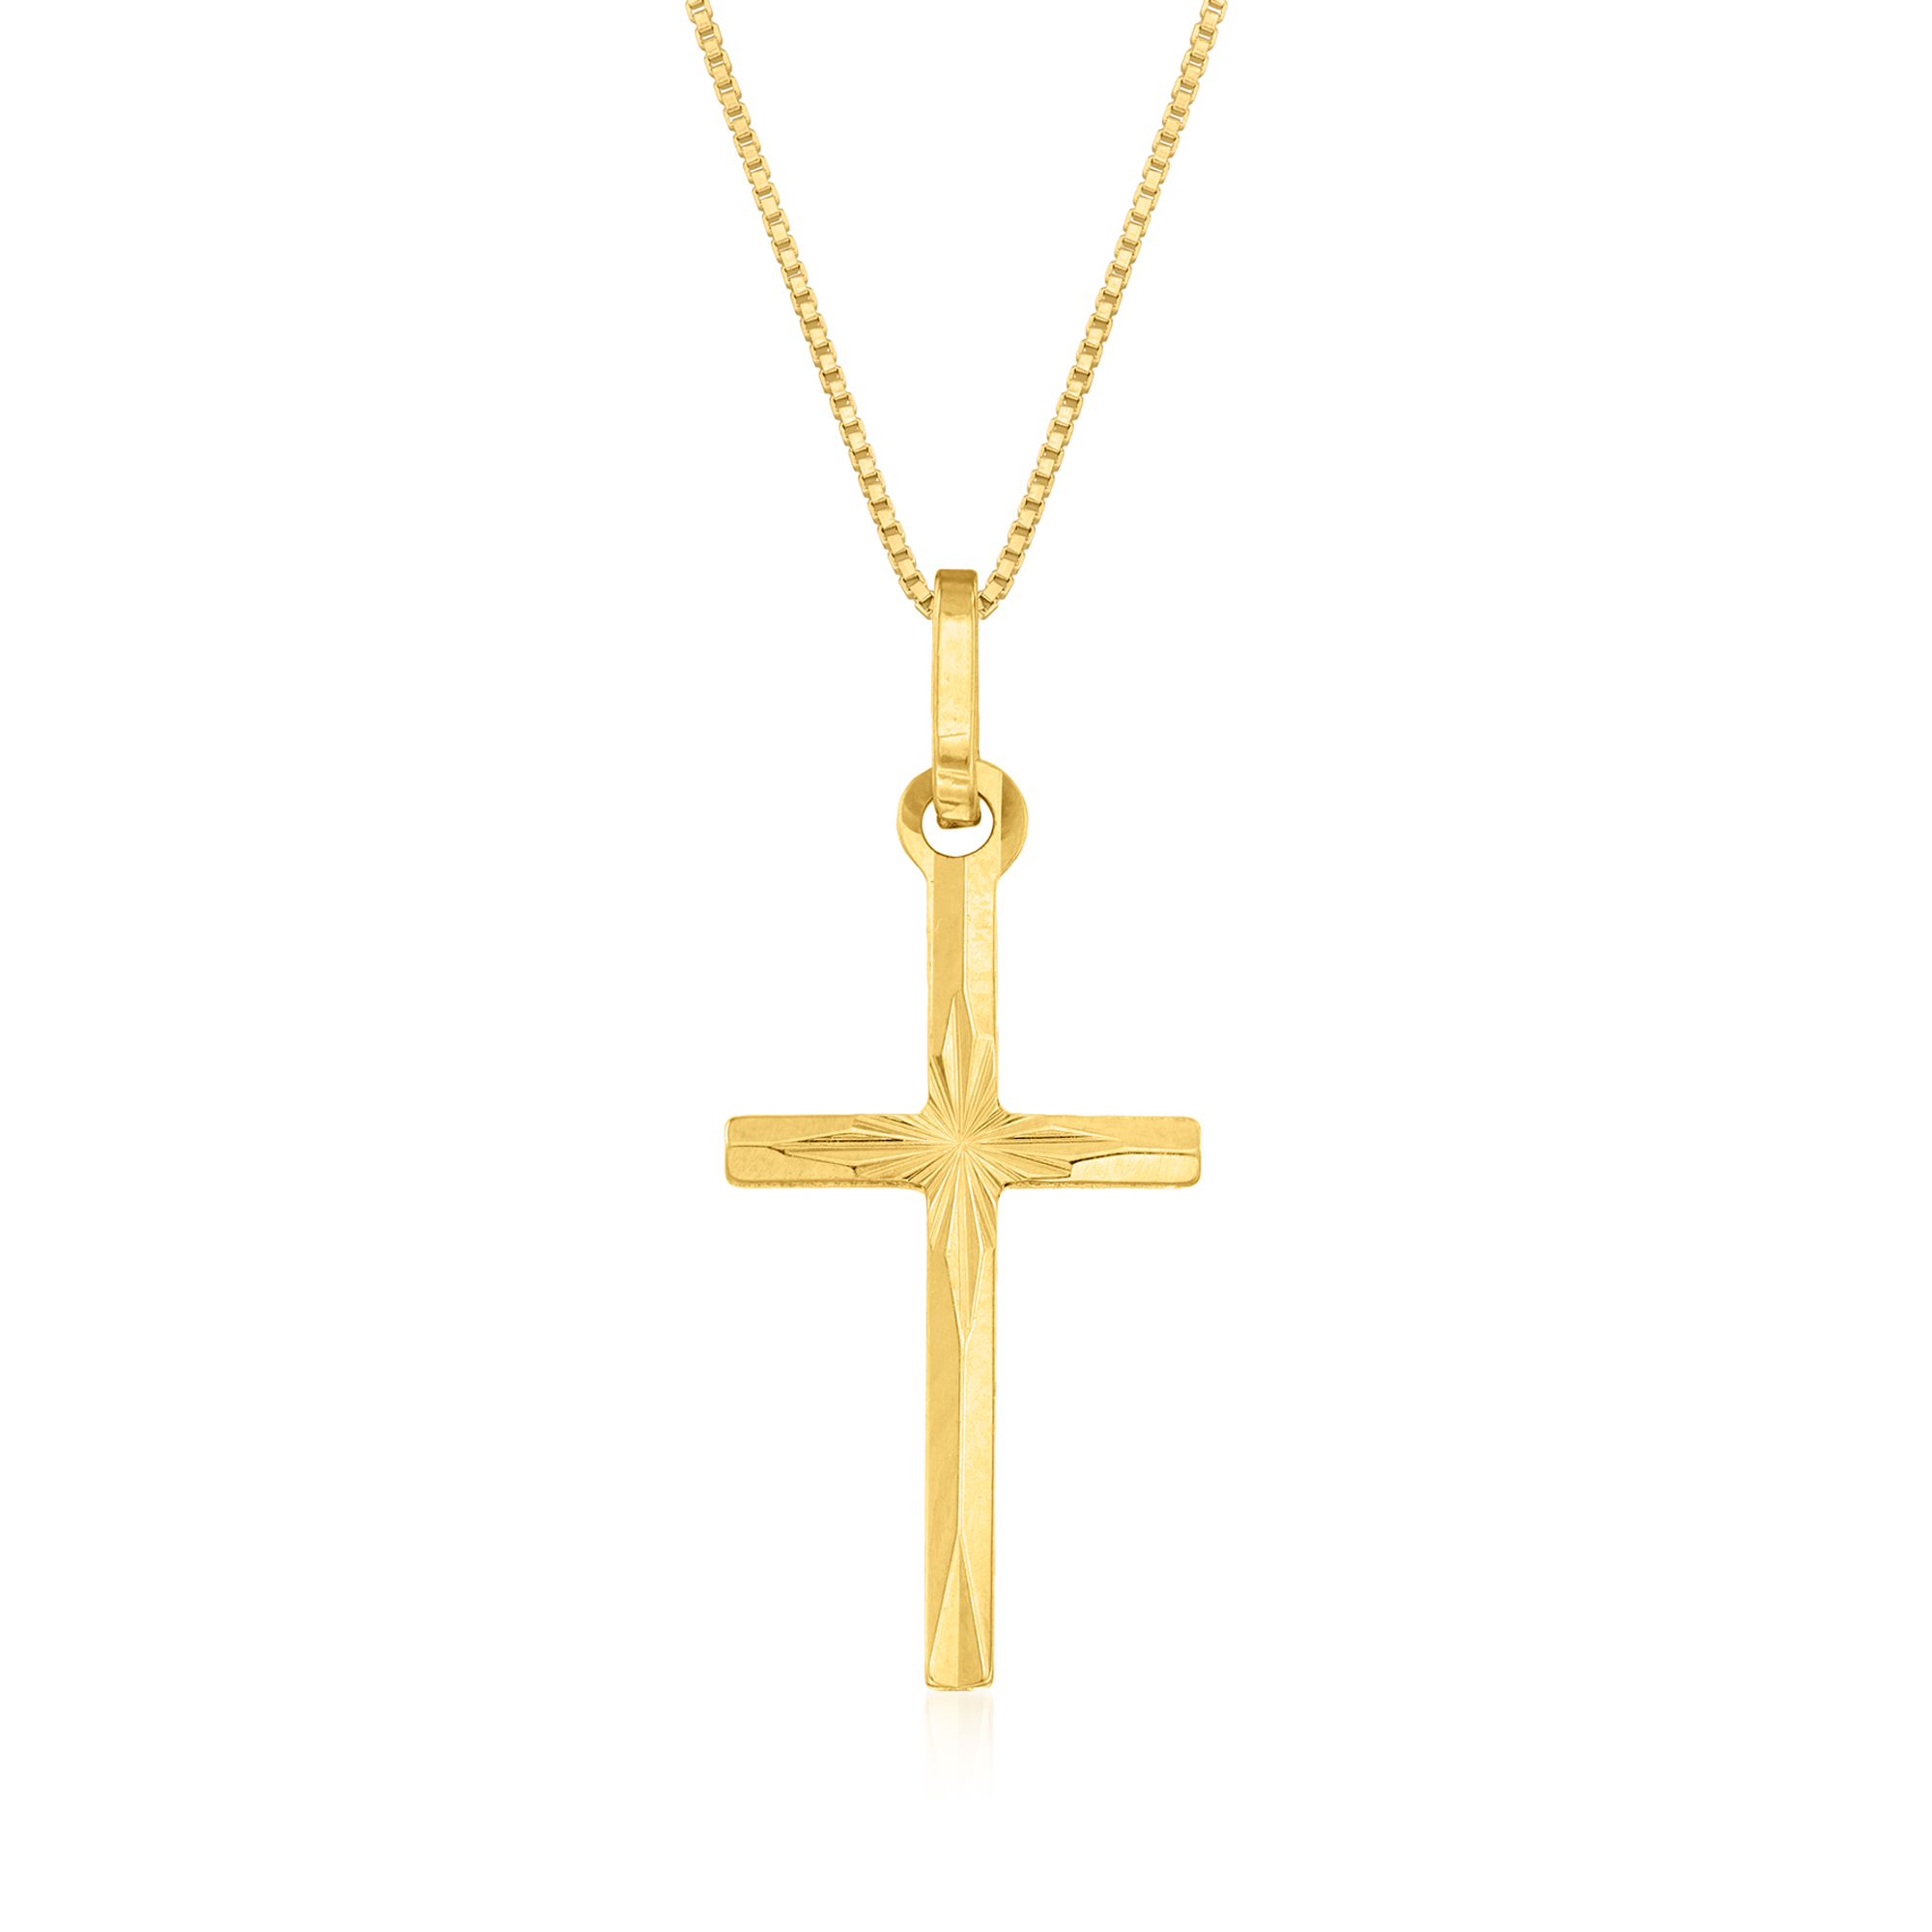 DiamondJewelryNY Religious Pendants Hollow Cross Pendant 